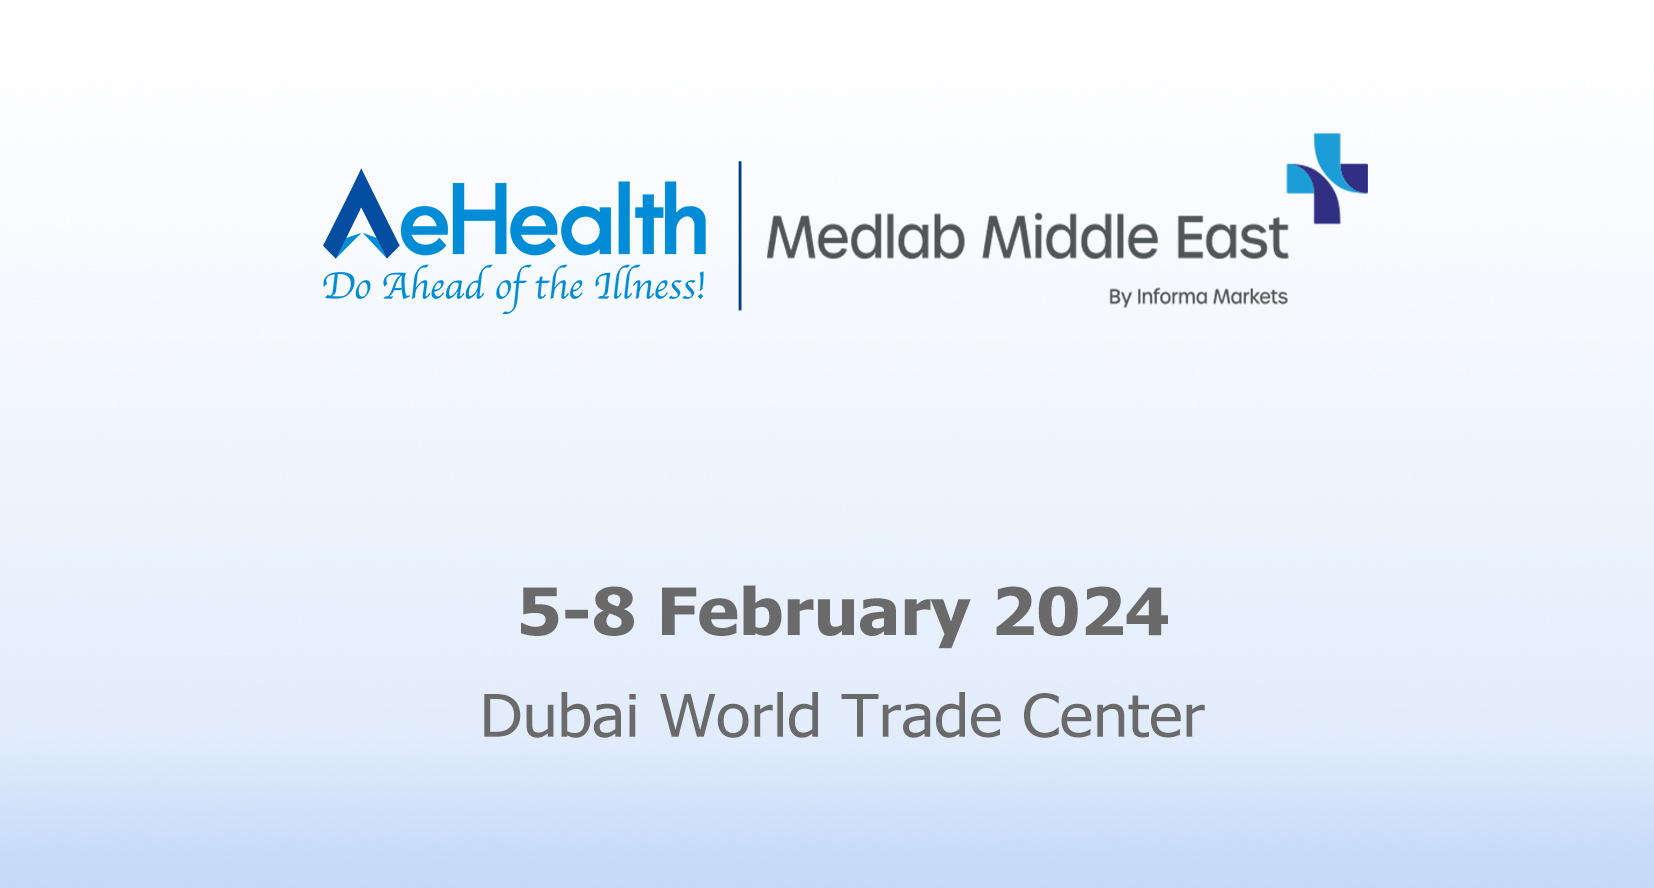 Medlab Middle East 2024, Dubai World Trade Center